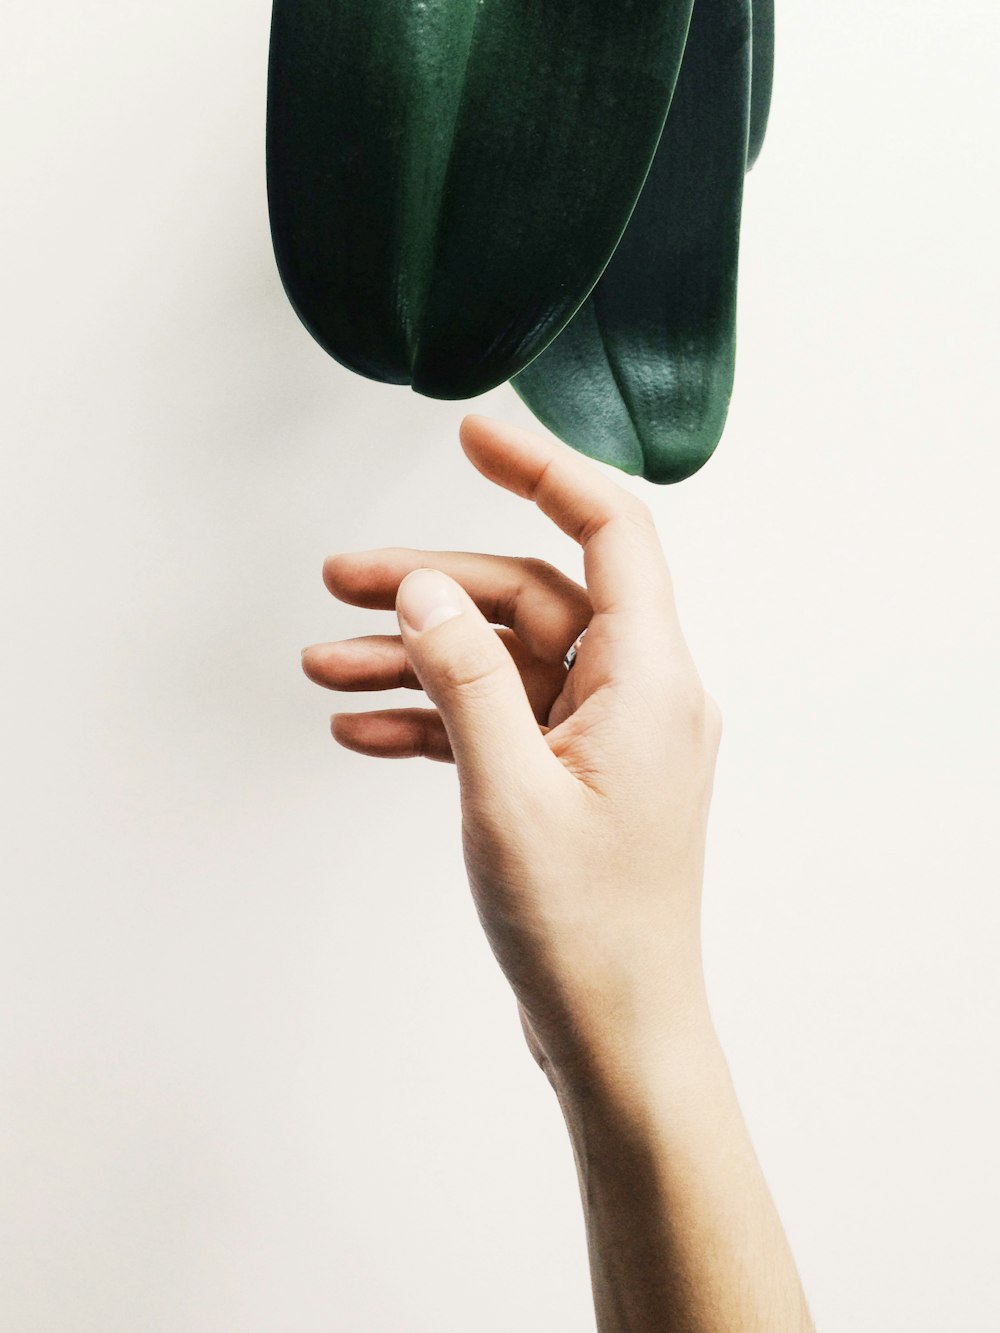 la main d’une personne tendant la main vers une plante verte